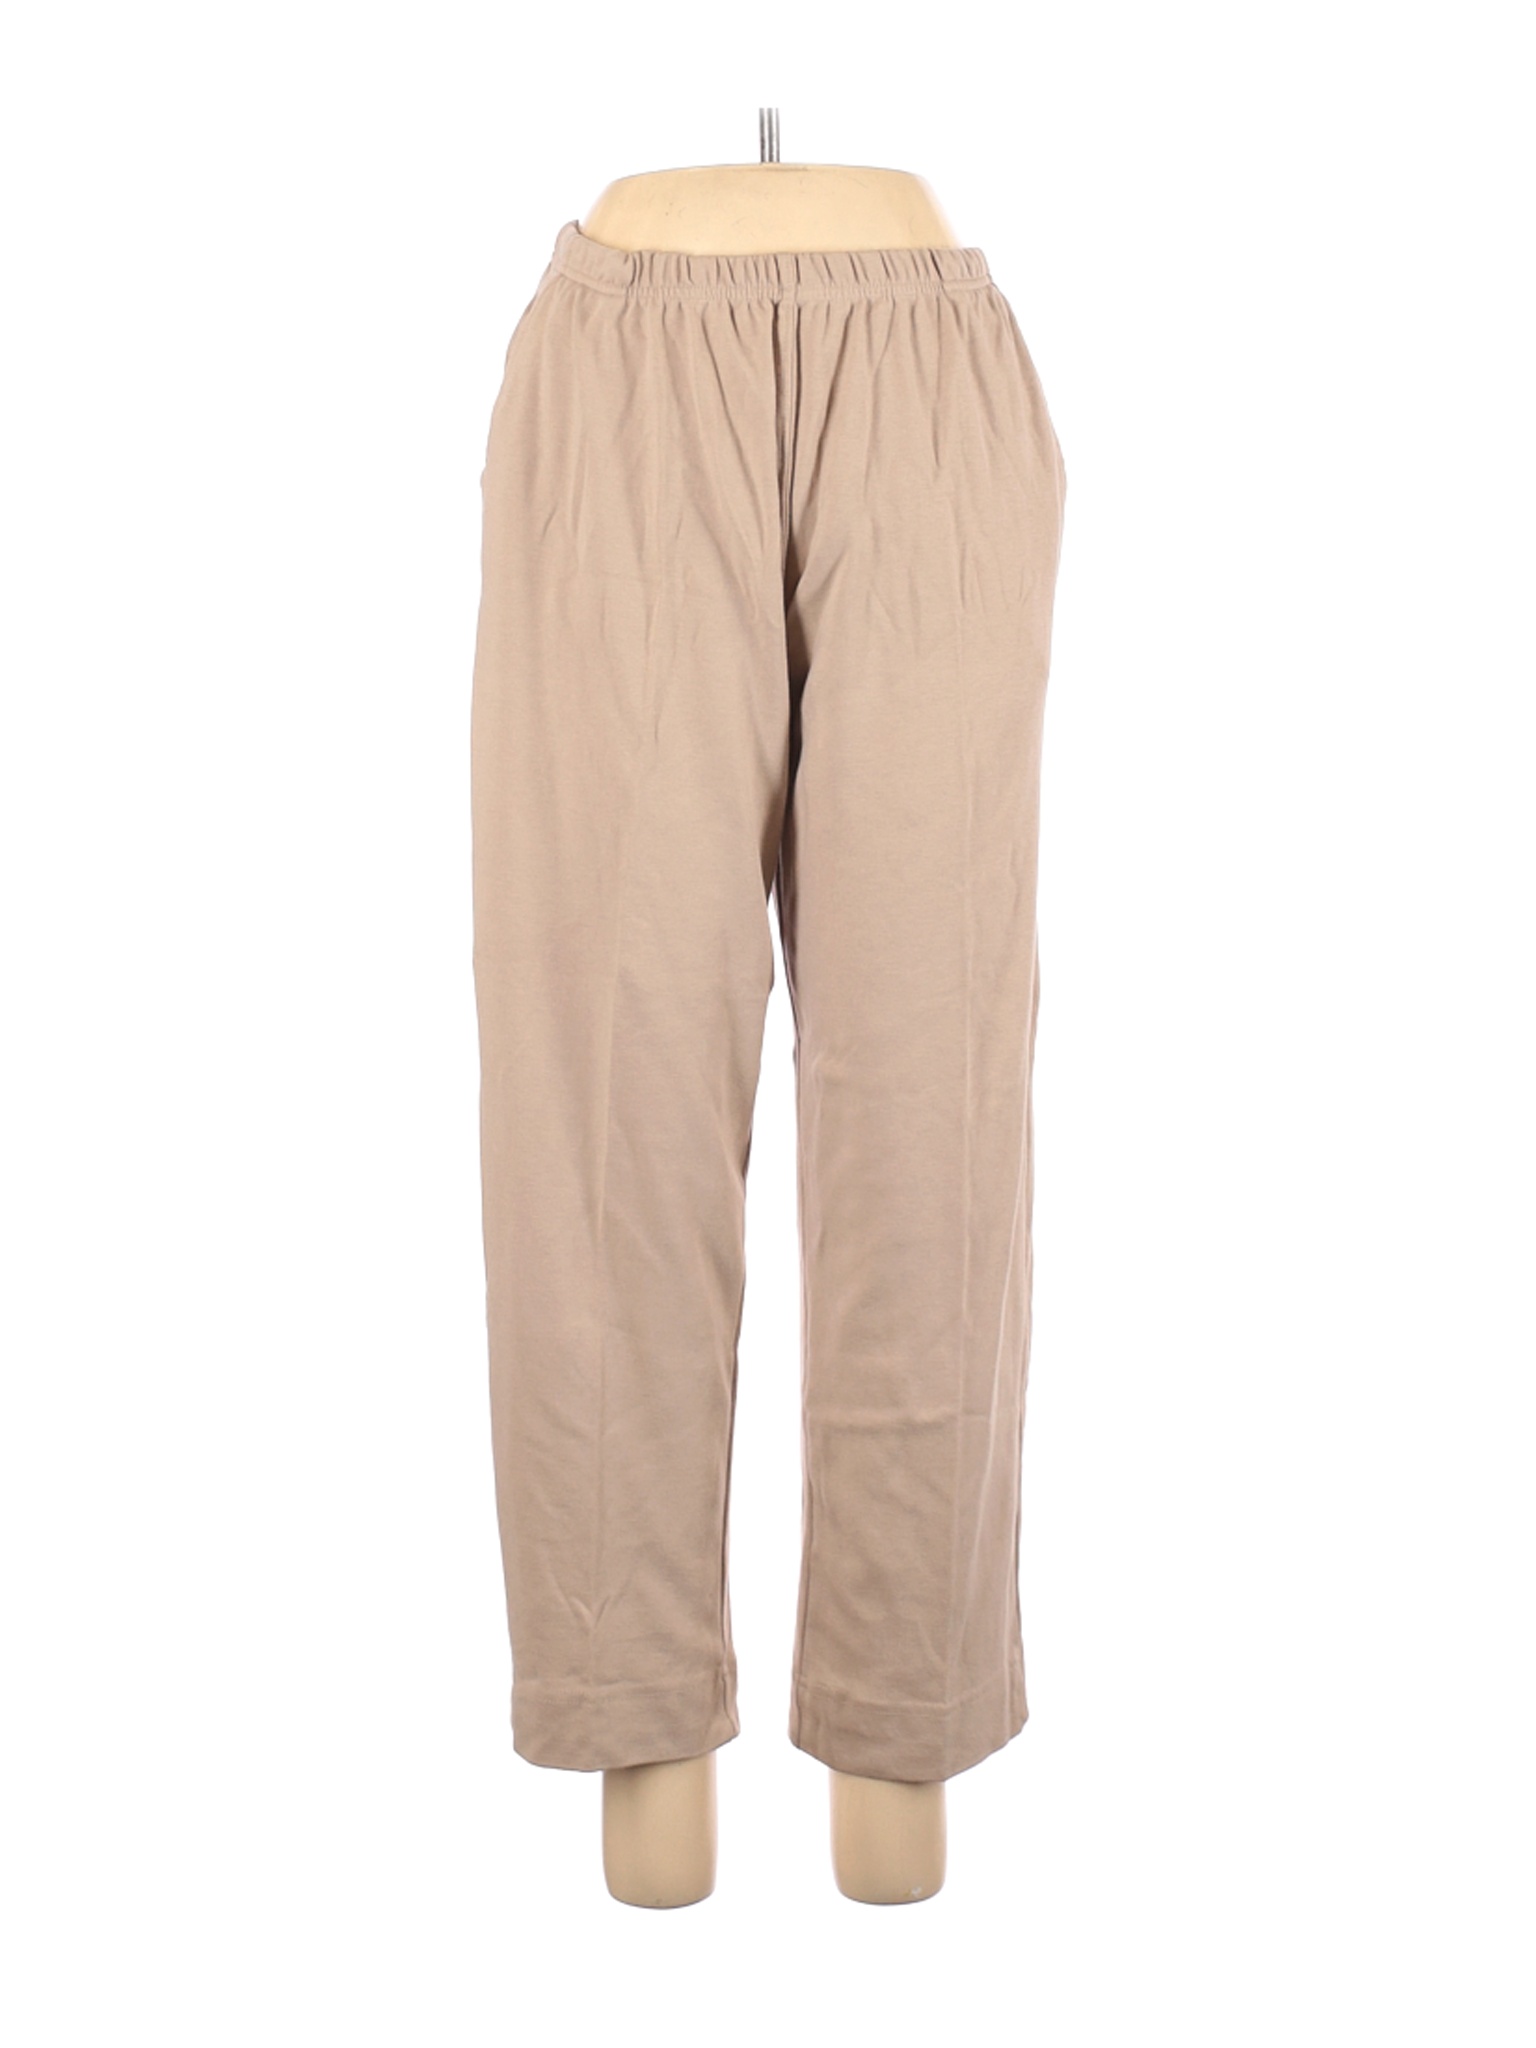 Blair Women Brown Casual Pants L Petites | eBay